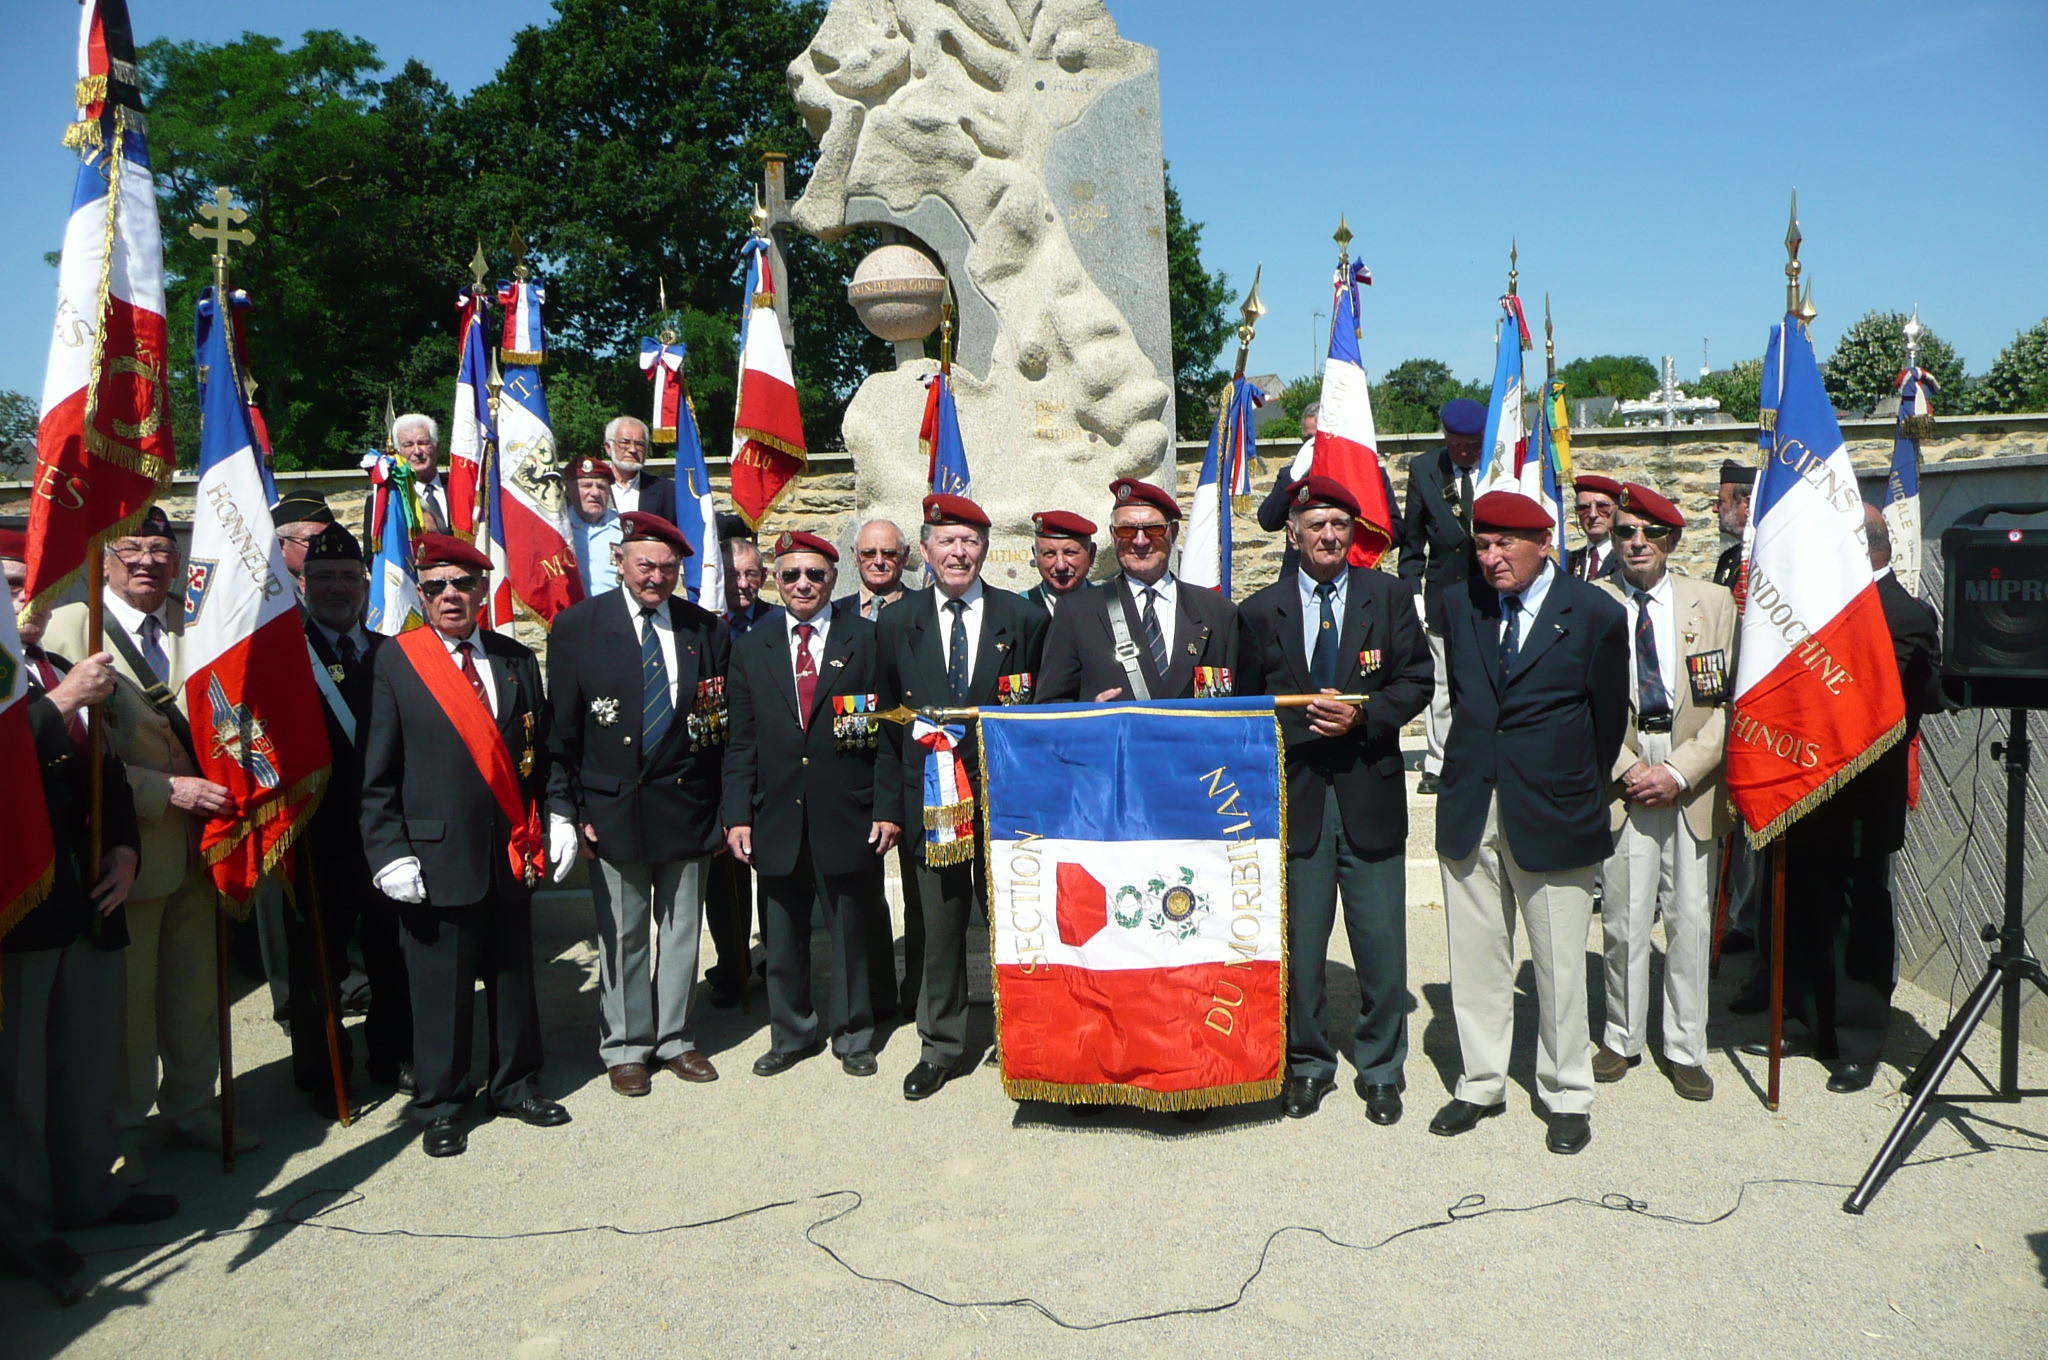 Jean-Paul entouré de ses camarades Paras lors de la cérémonie d’hommage au général Bigeard à Lauzach